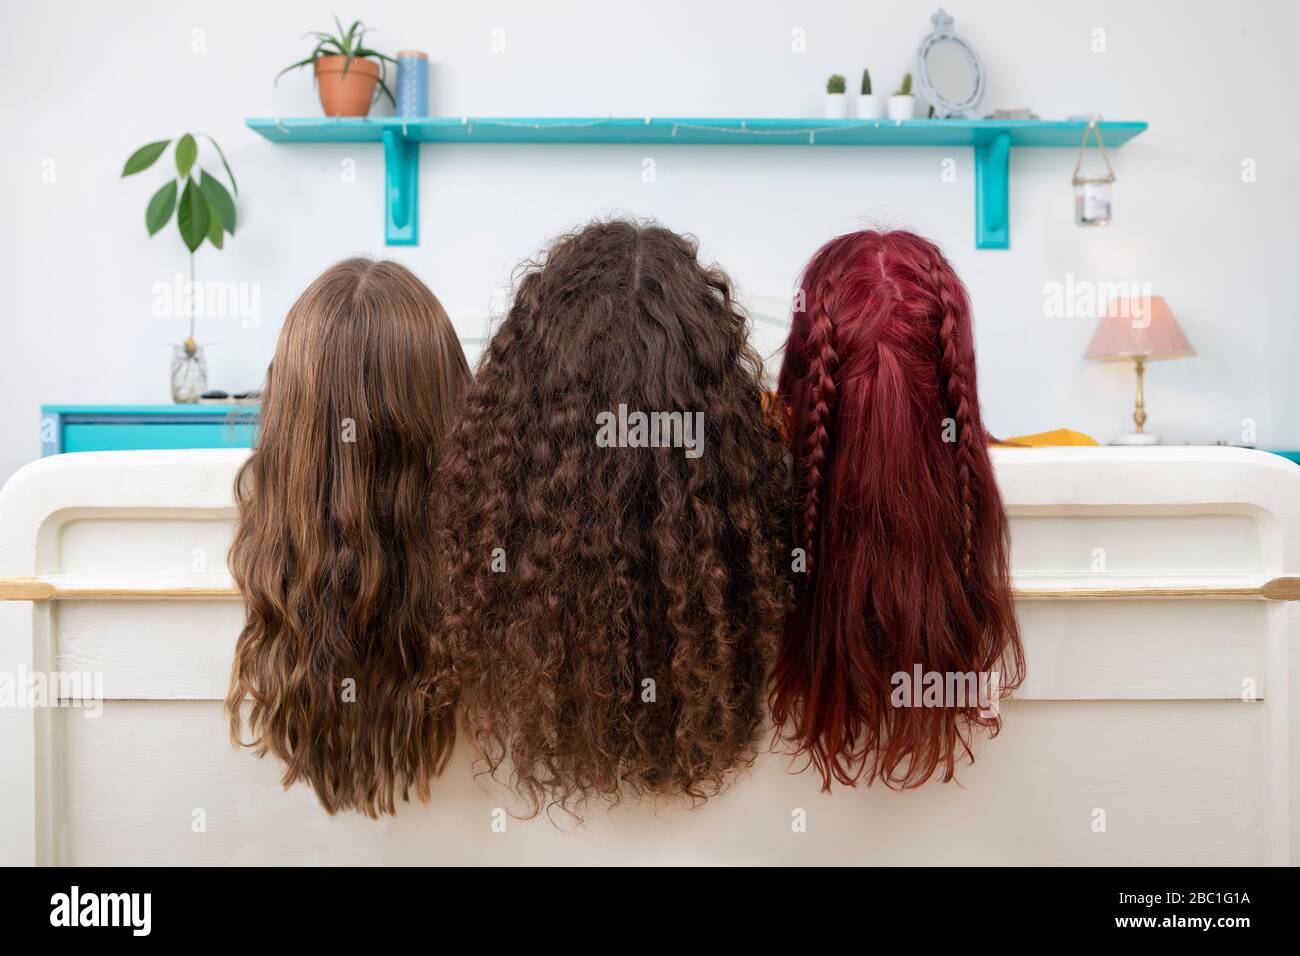 Rückansicht von drei Schwestern mit langen Haaren Stockfoto